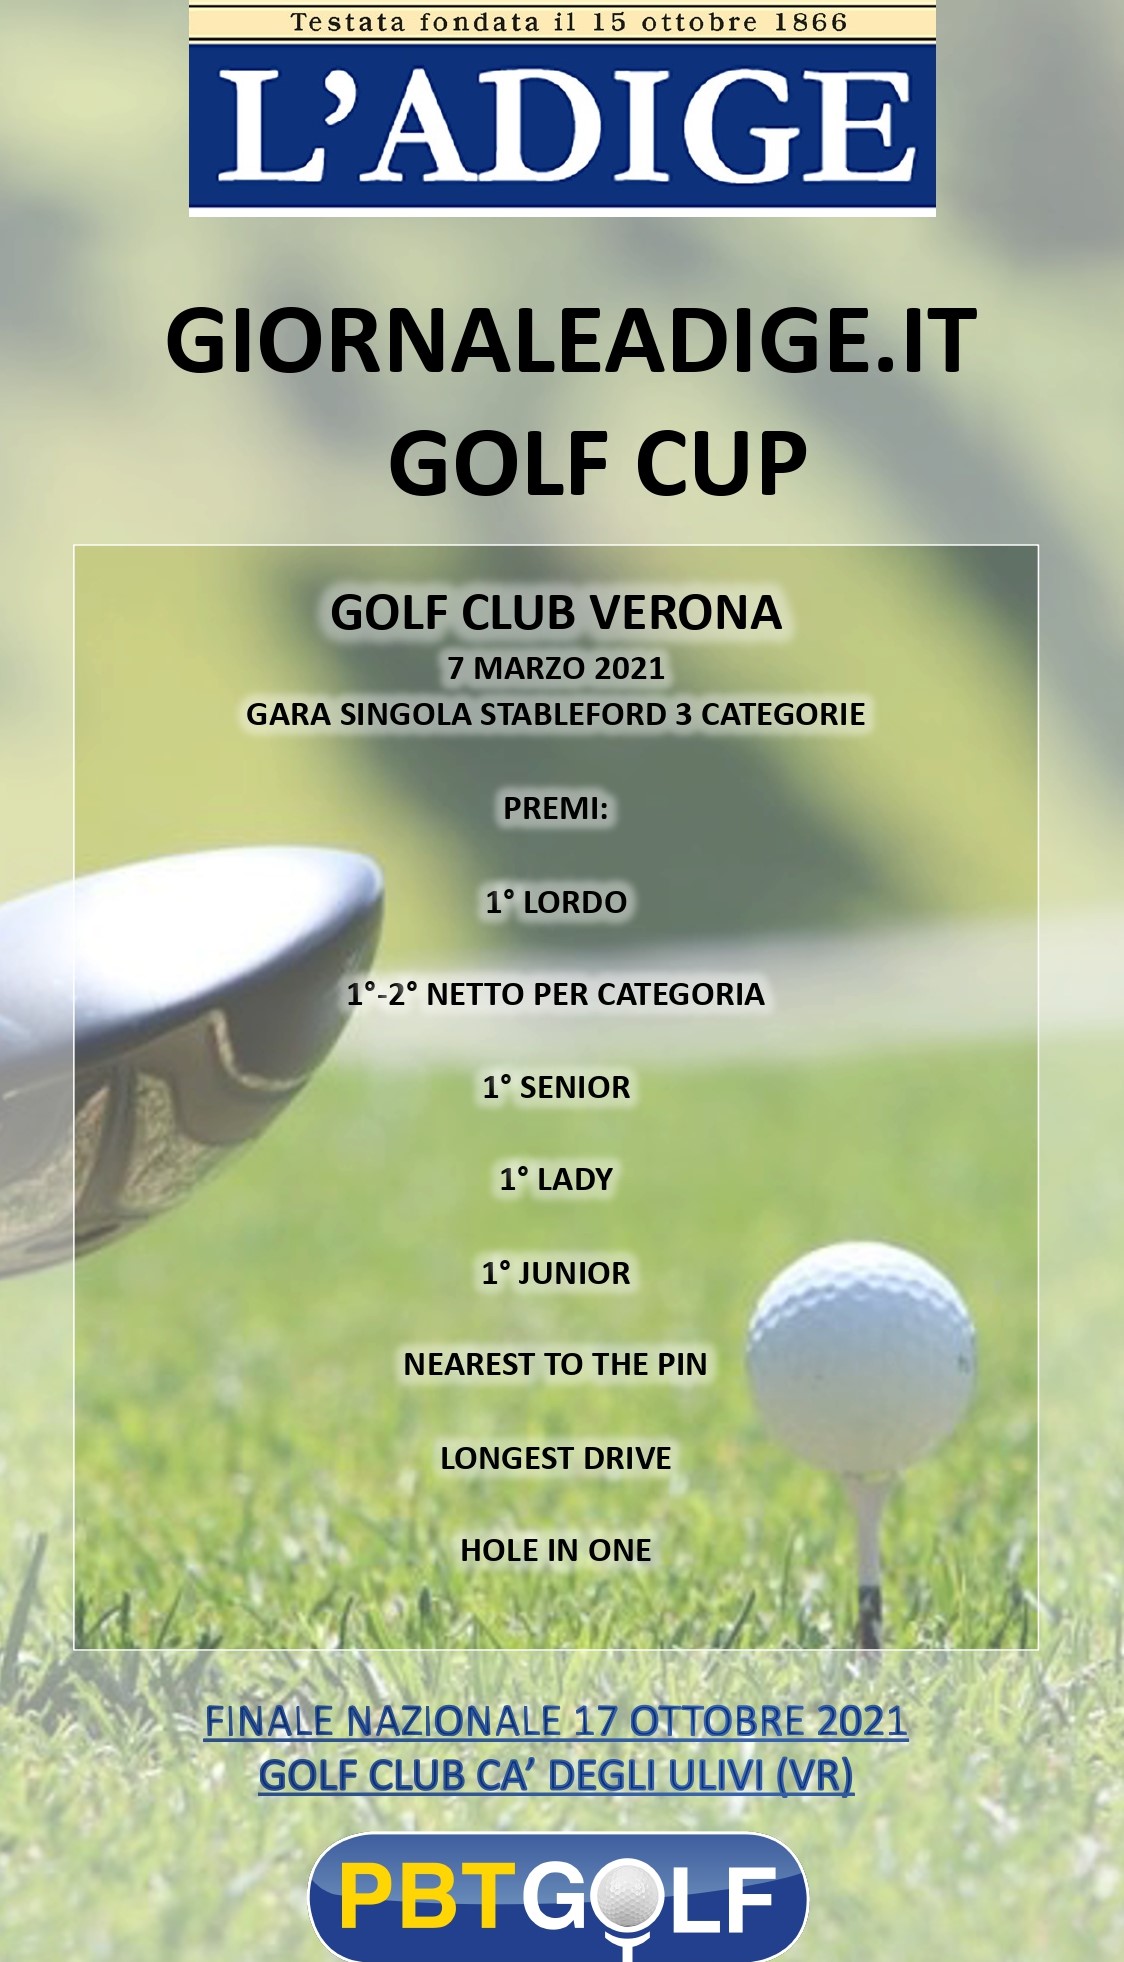 Domenica al Golf Club Verona la Giornaleadige.it Cup